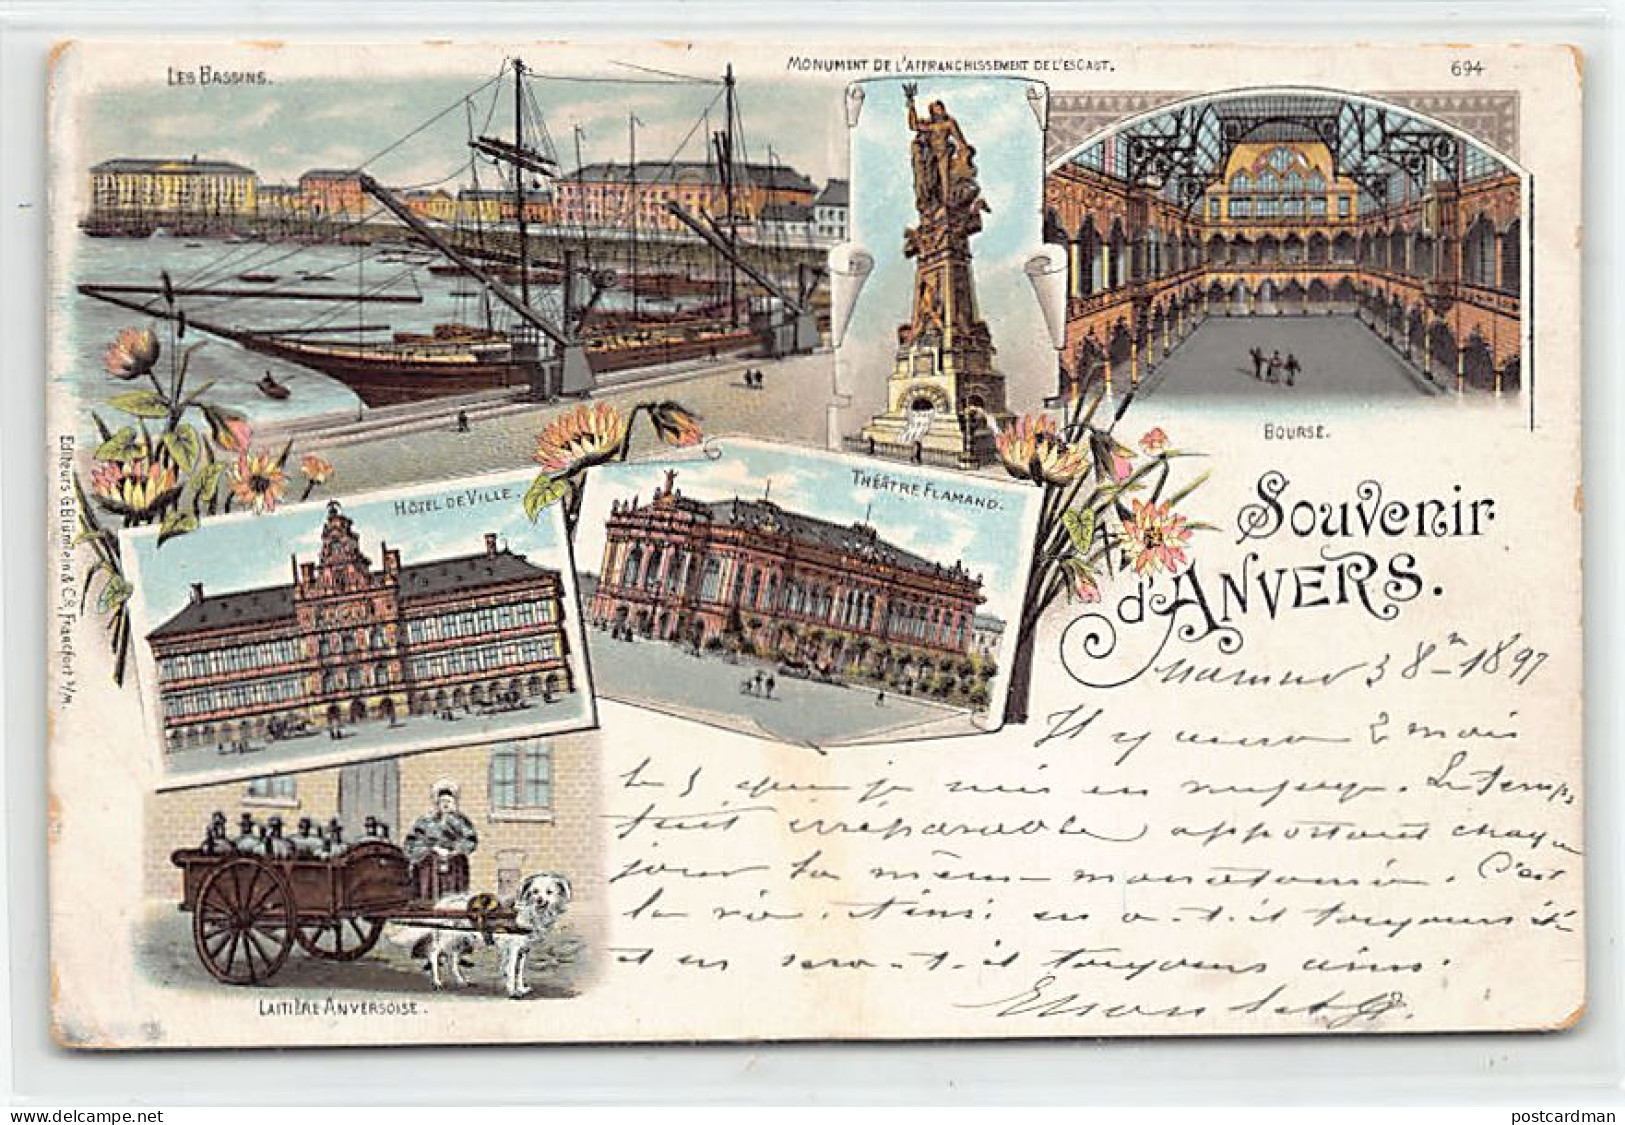 België - ANTWERPEN - Jaar 1897 - LITHO - Uitg. G. Blümelein - Antwerpen